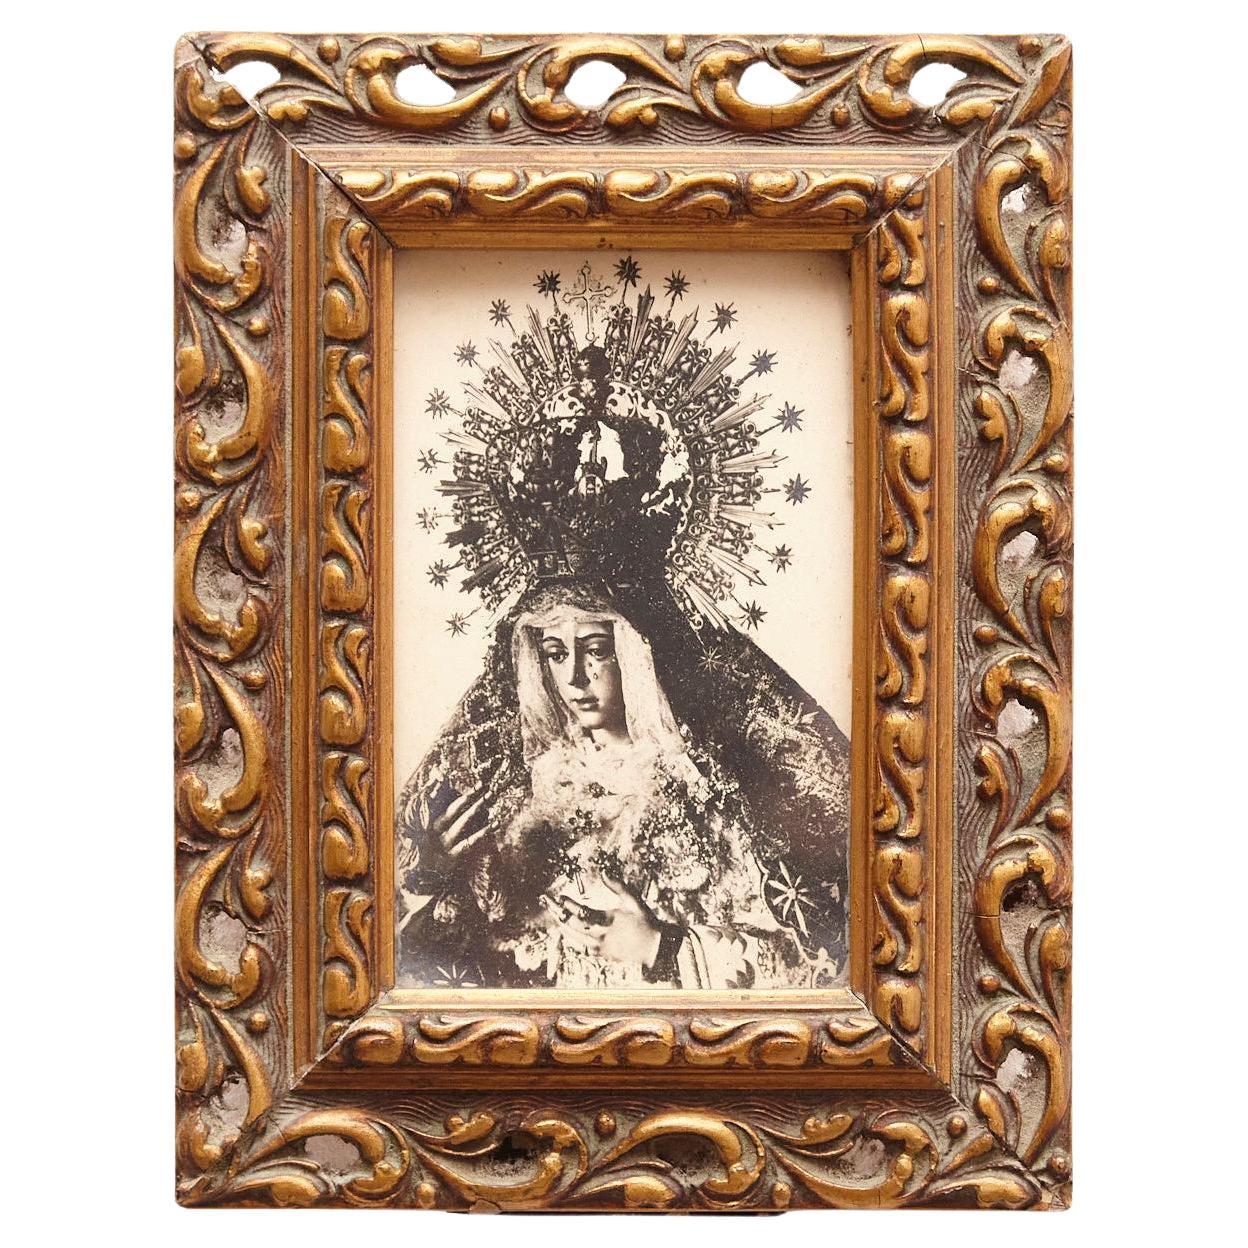  Image de la Vierge encadrée, vers 1950